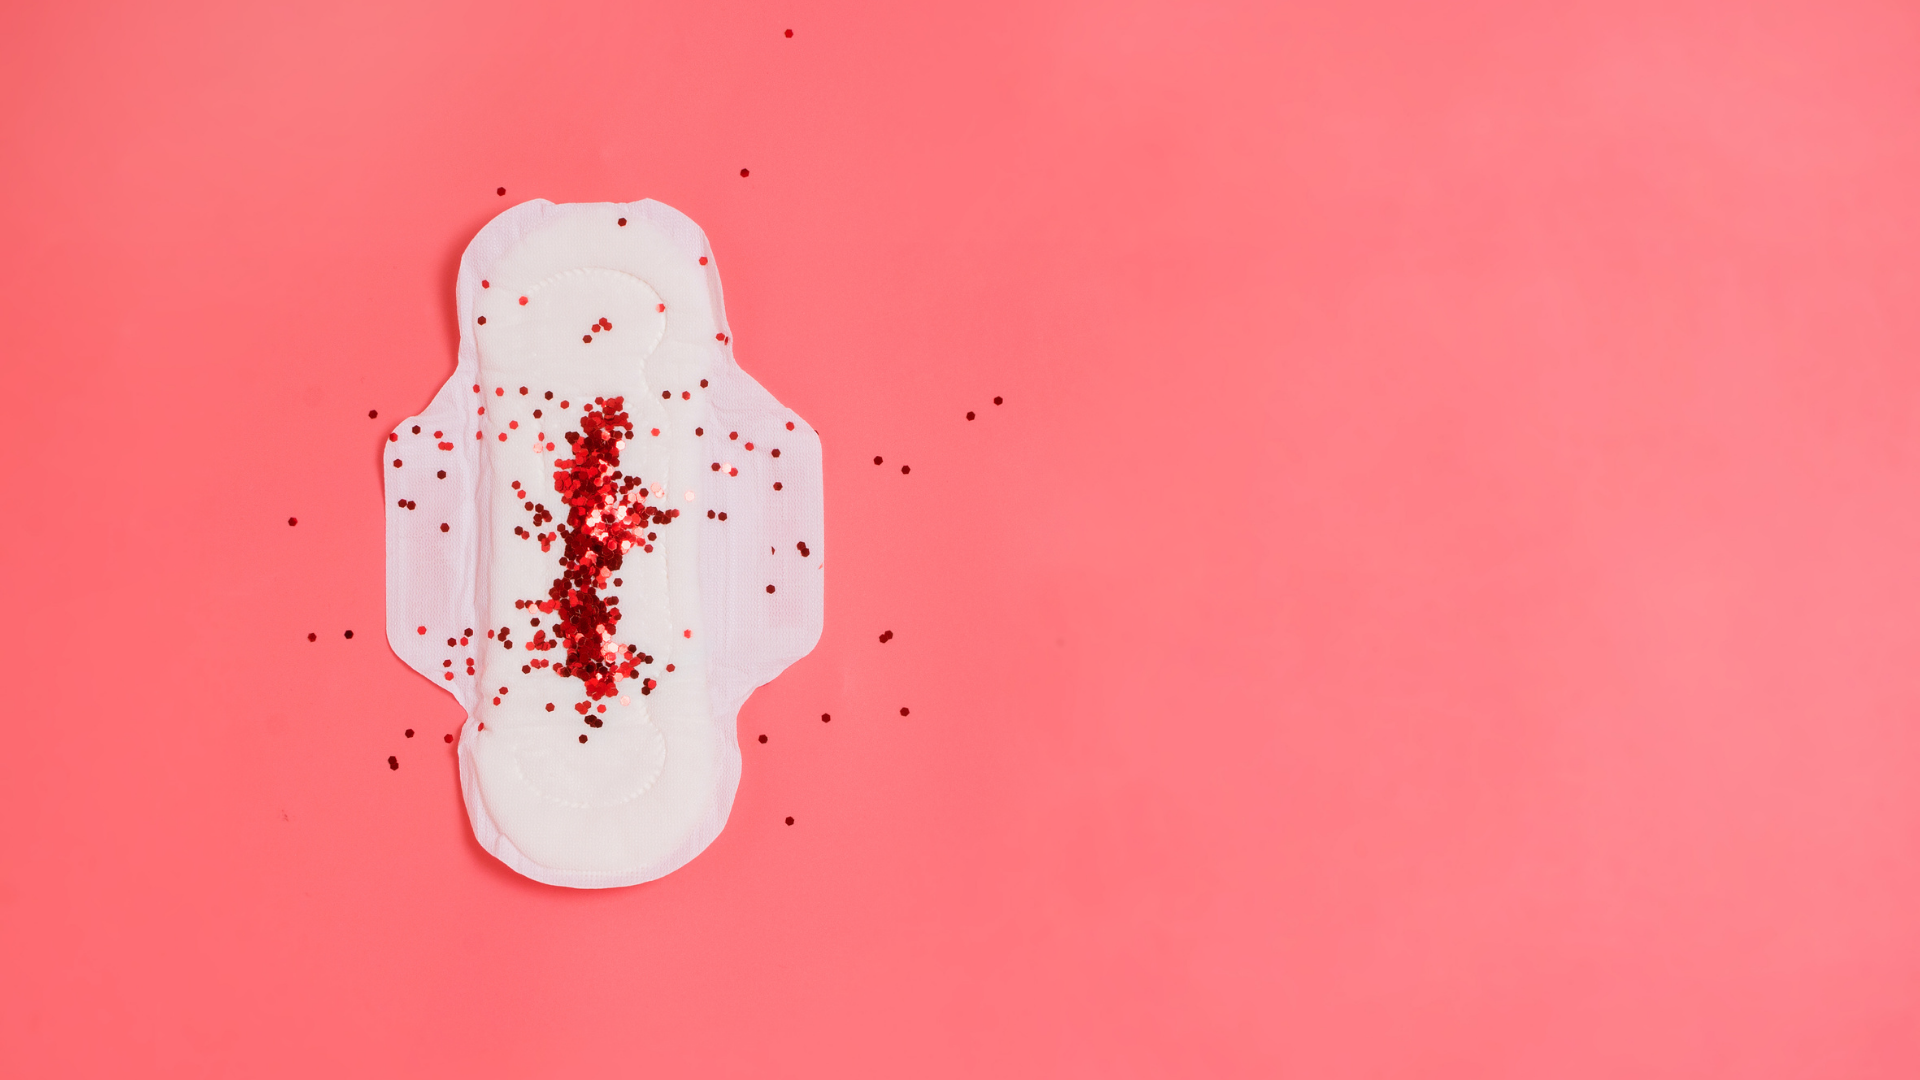 O que significa cada cor na menstruação? - Dra. Beatriz Jorquera